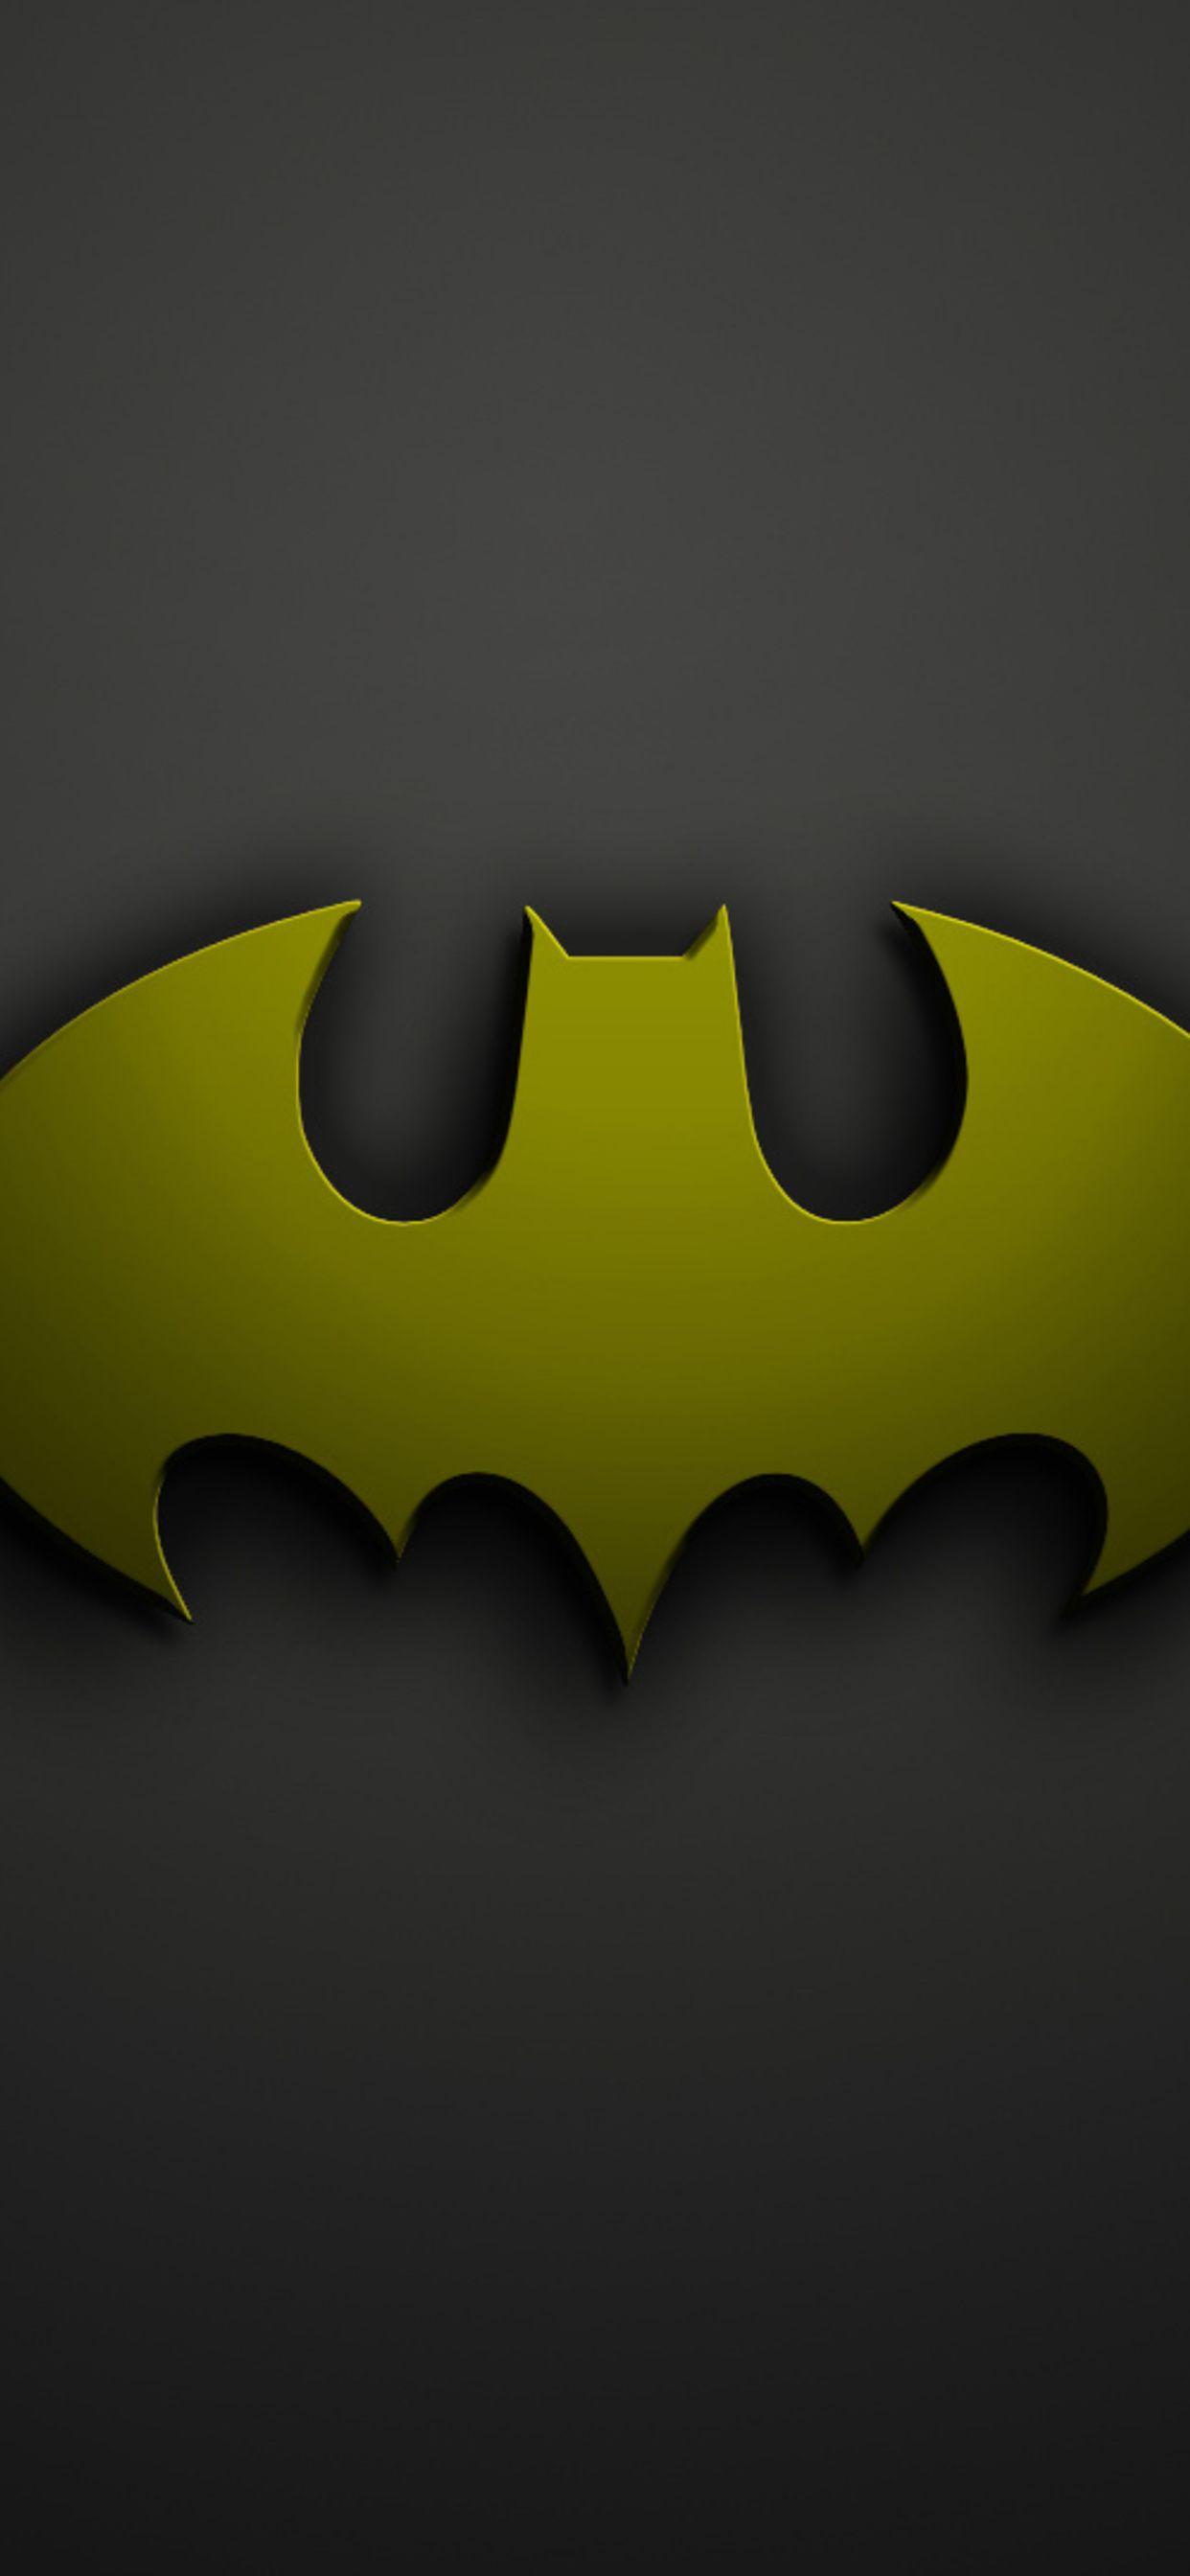 Batman Symbol iPhone Wallpapers - Top Free Batman Symbol iPhone Backgrounds  - WallpaperAccess